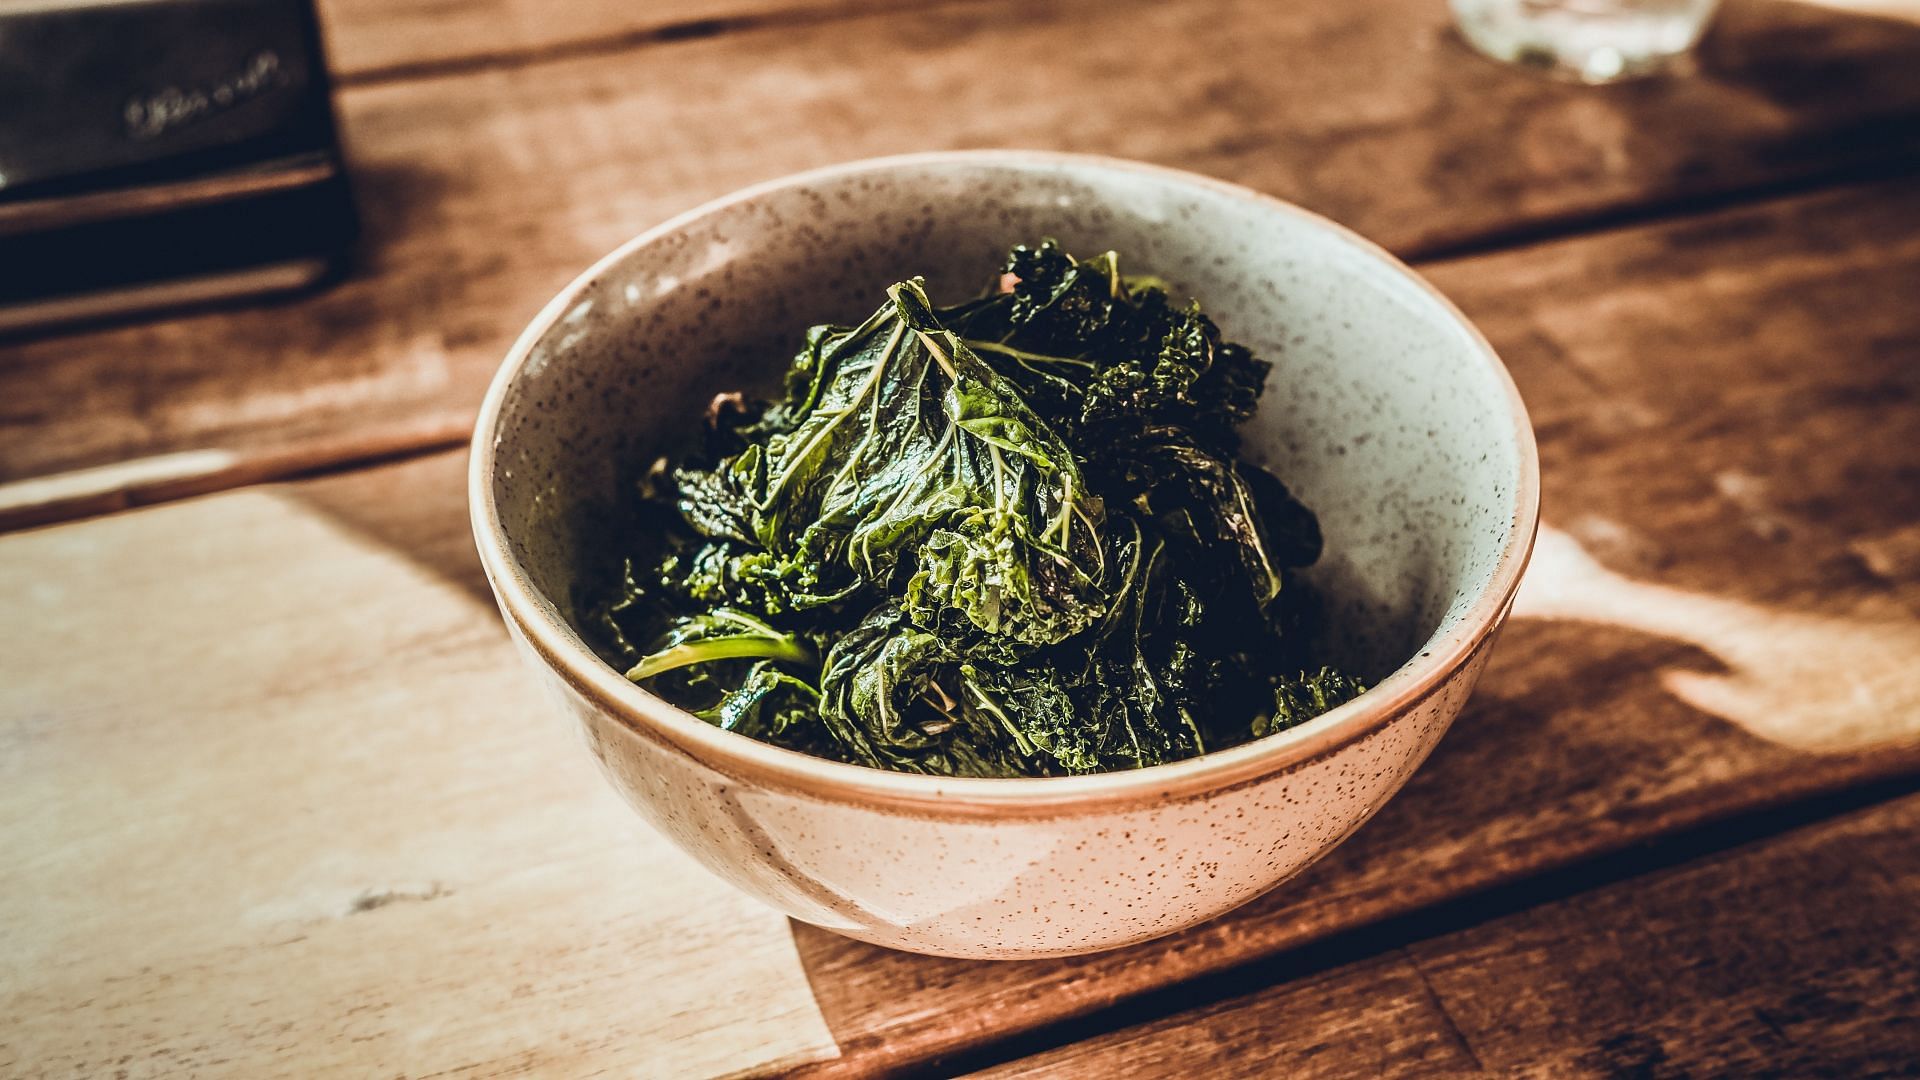 Benefits of kale: Improves your digestive system. (Image via Unsplash / Samuel Regan)